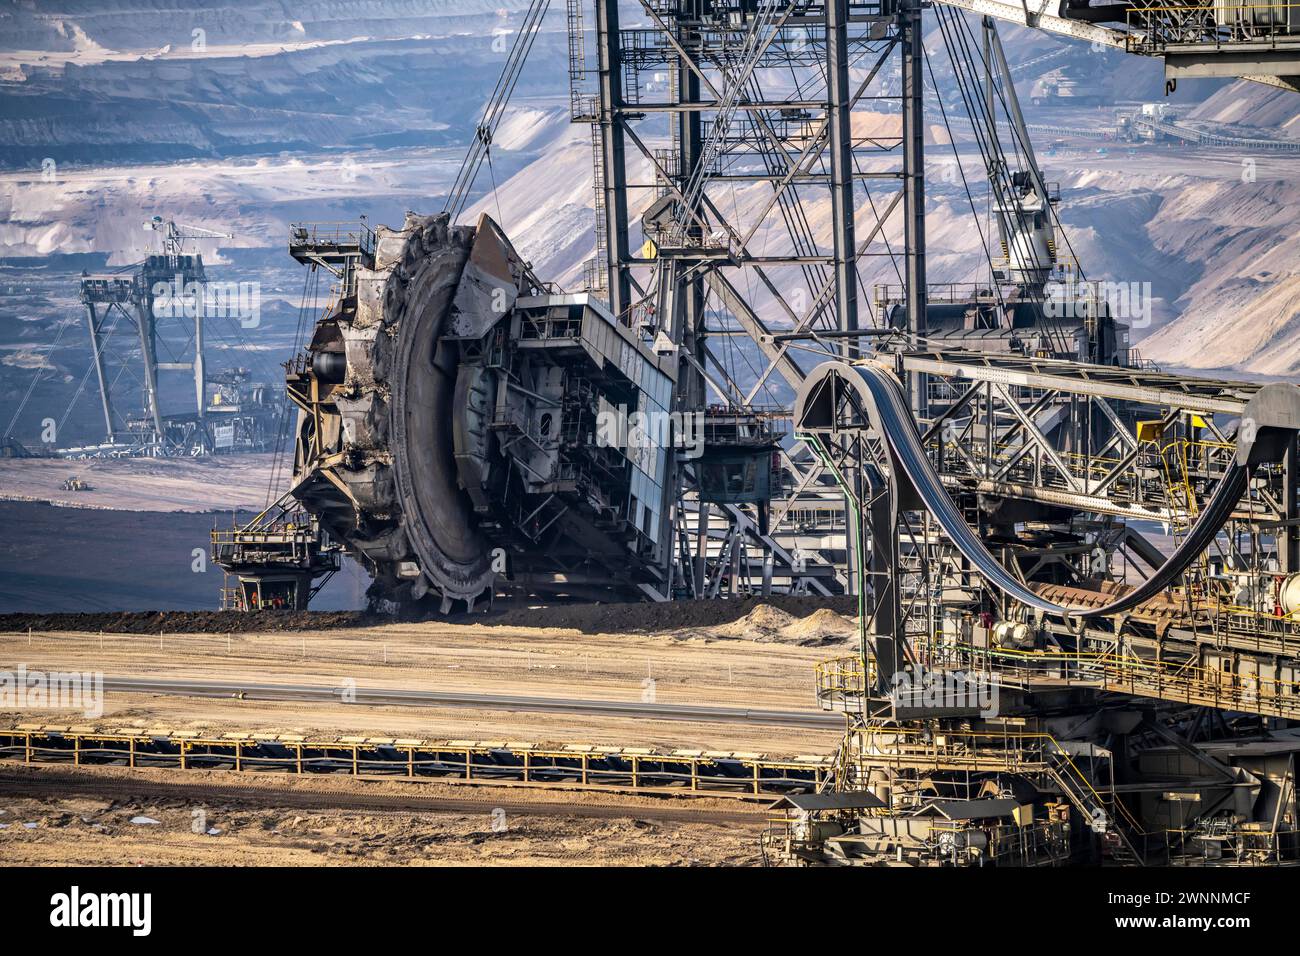 Opencast lignite mine Garzweiler, bucket wheel excavator mining overburden, coal, near Jüchen, NRW, Germany, Stock Photo